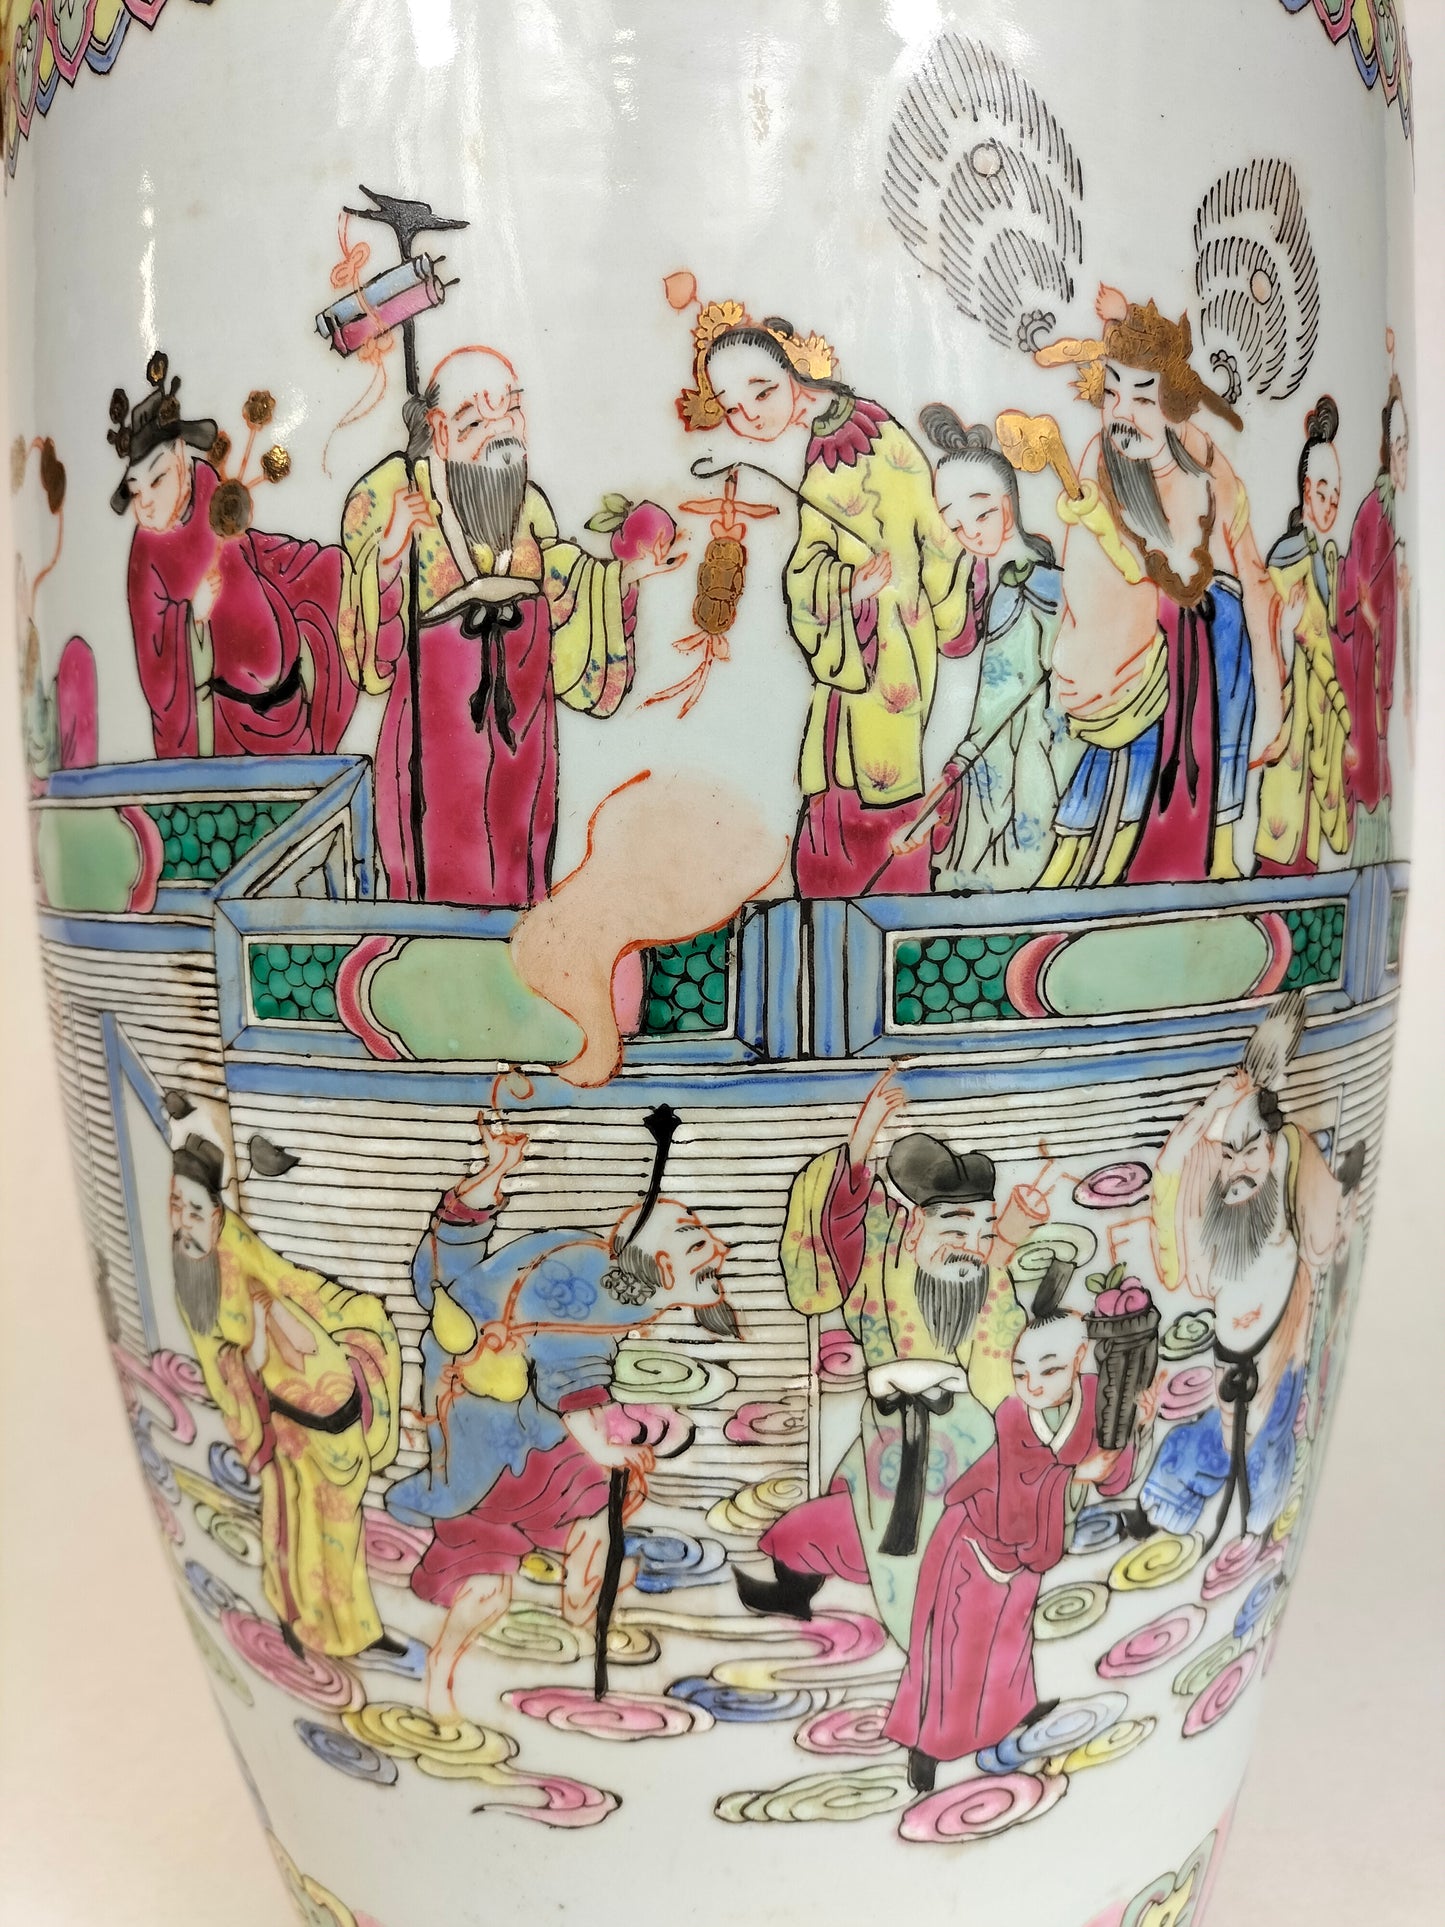 Grande vaso chinês XL da família XL decorado com cena imperial // Meados do século XX